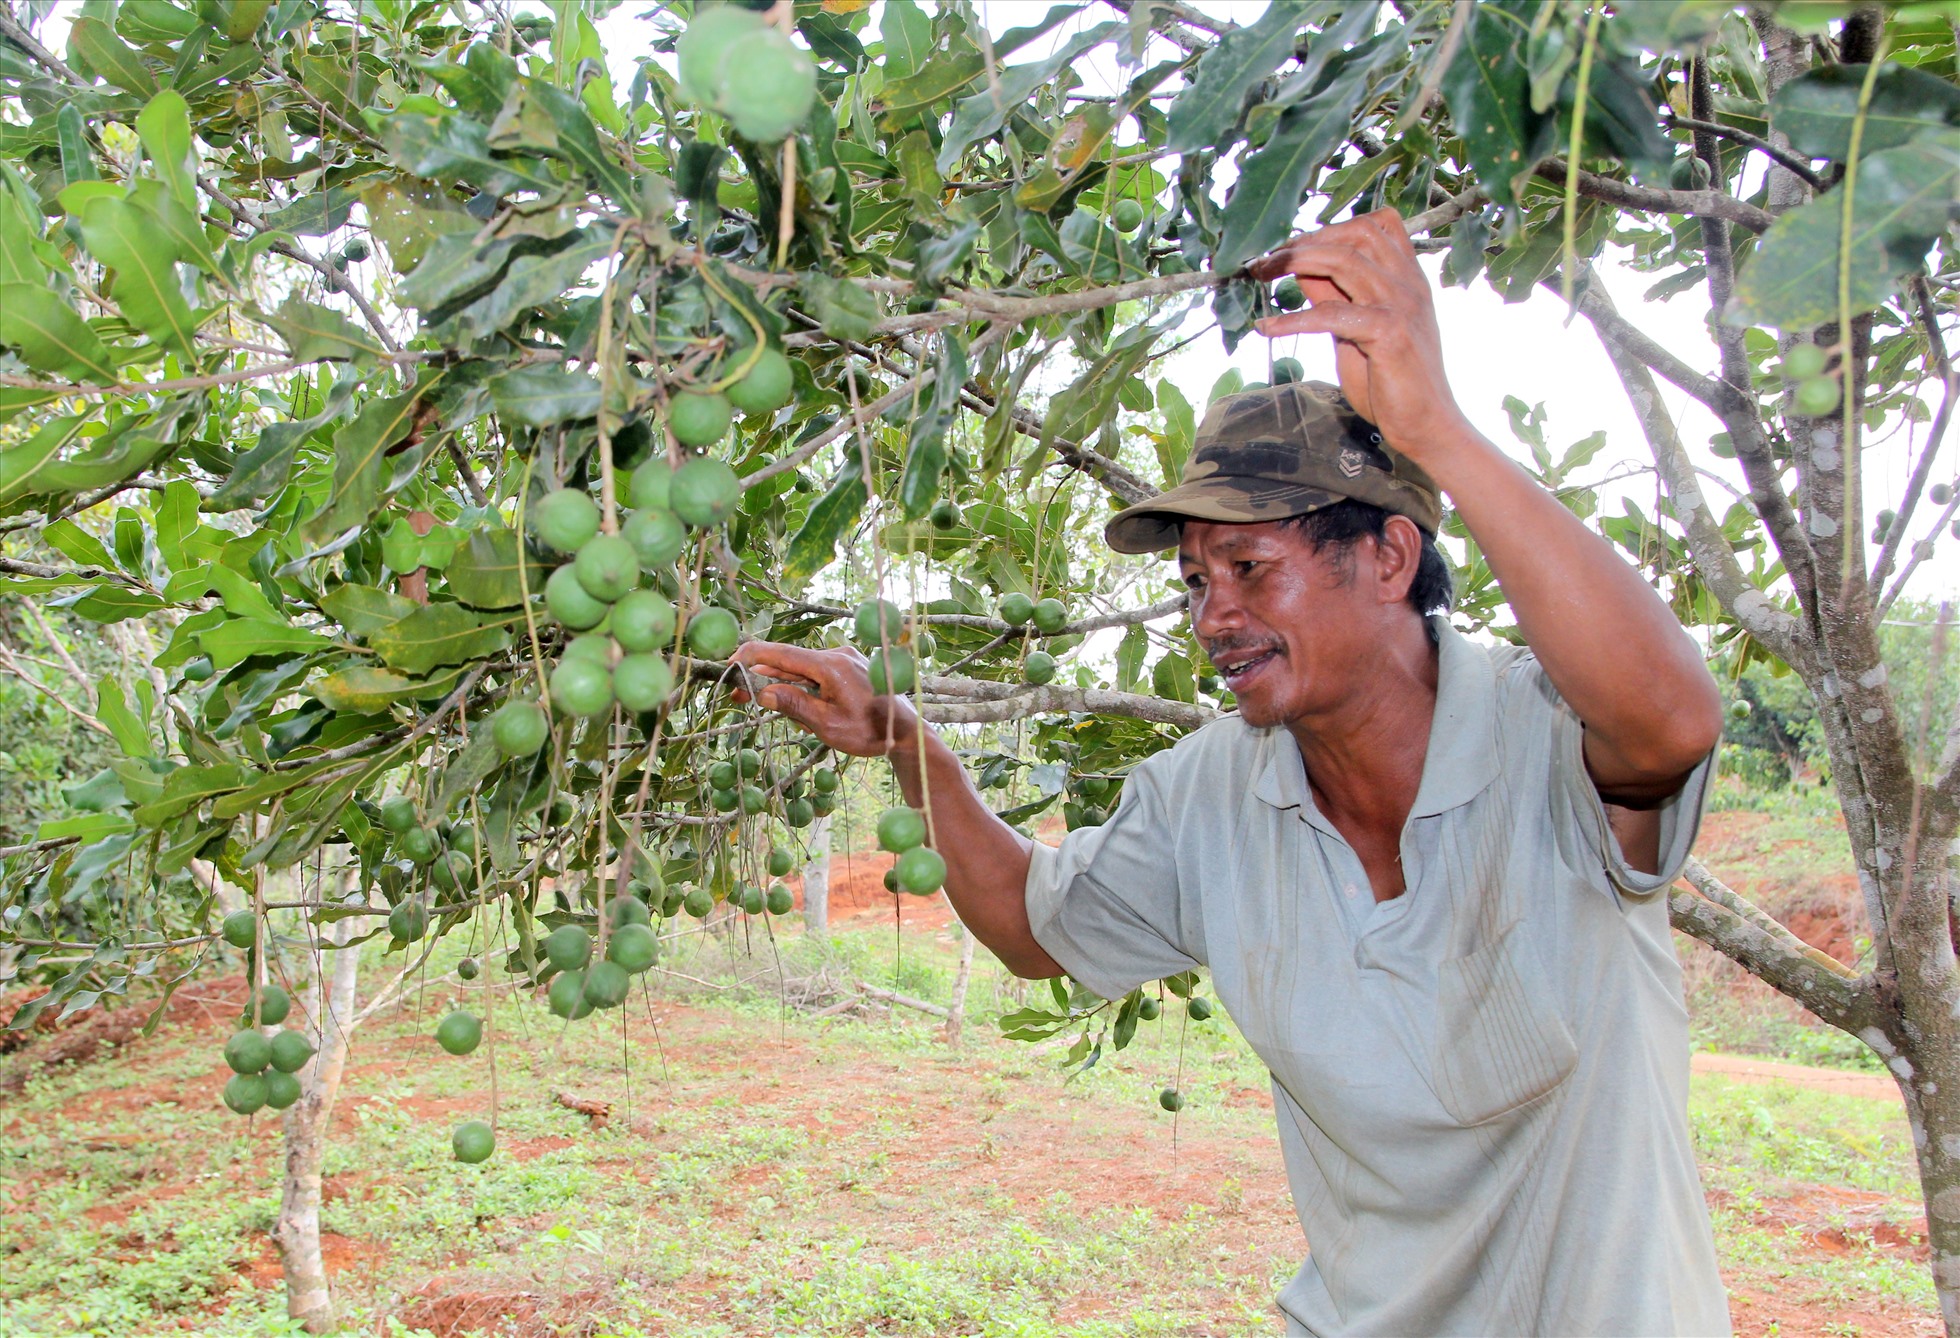 Hiện nay, các cơ quan chức năng tỉnh Đắk Nông đang hỗ trợ người dân, doanh nghiệp cấp mã số vùng trồng cho các loại cây trồng như: Sầu riêng, mắc ca, hồ tiêu, chanh dây...